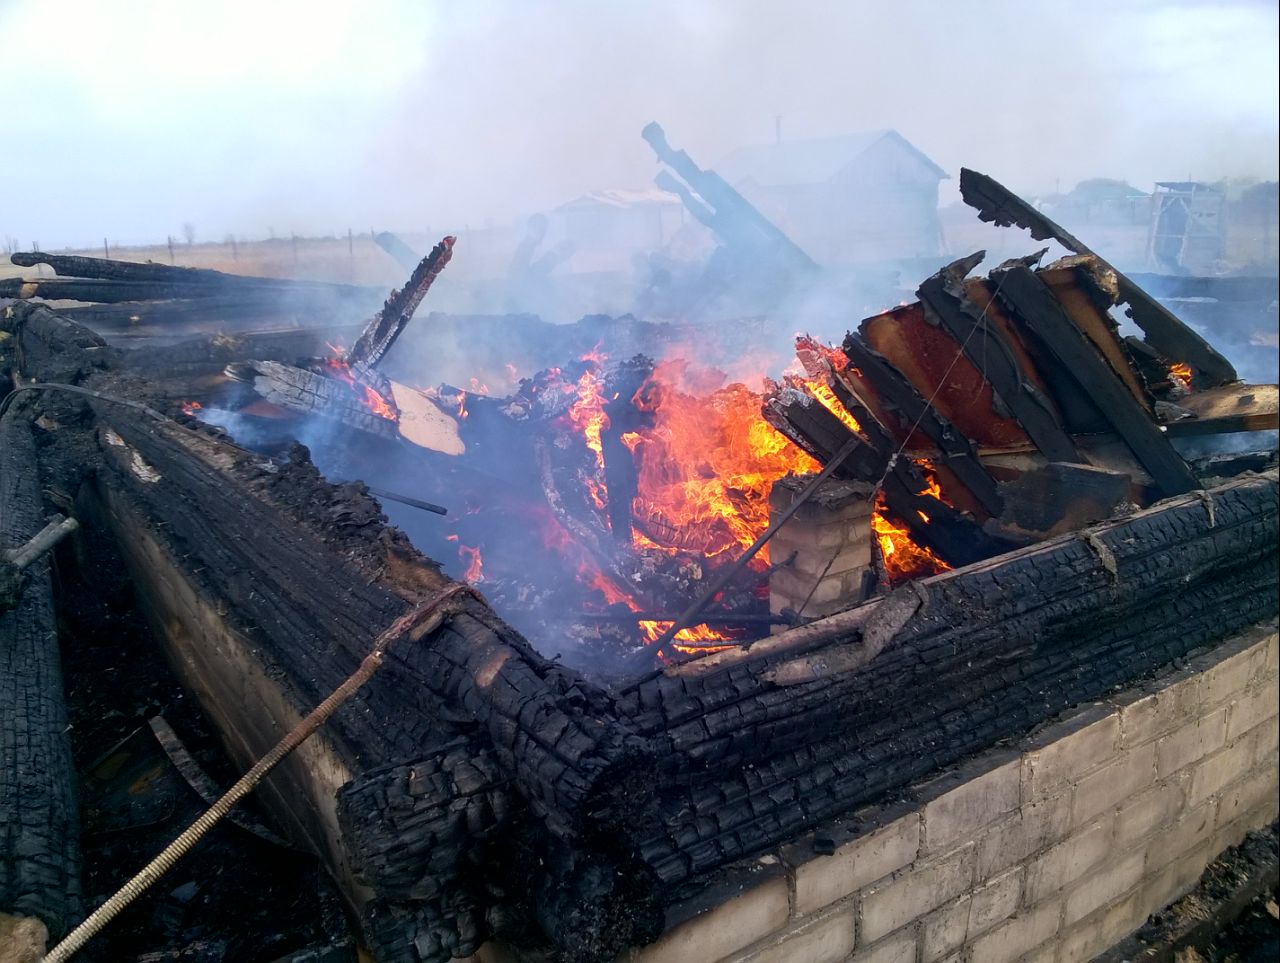 Тольяттинская семья с 4 детьми осталась без дома из-за пожара. Горожане собирают одежду и средства